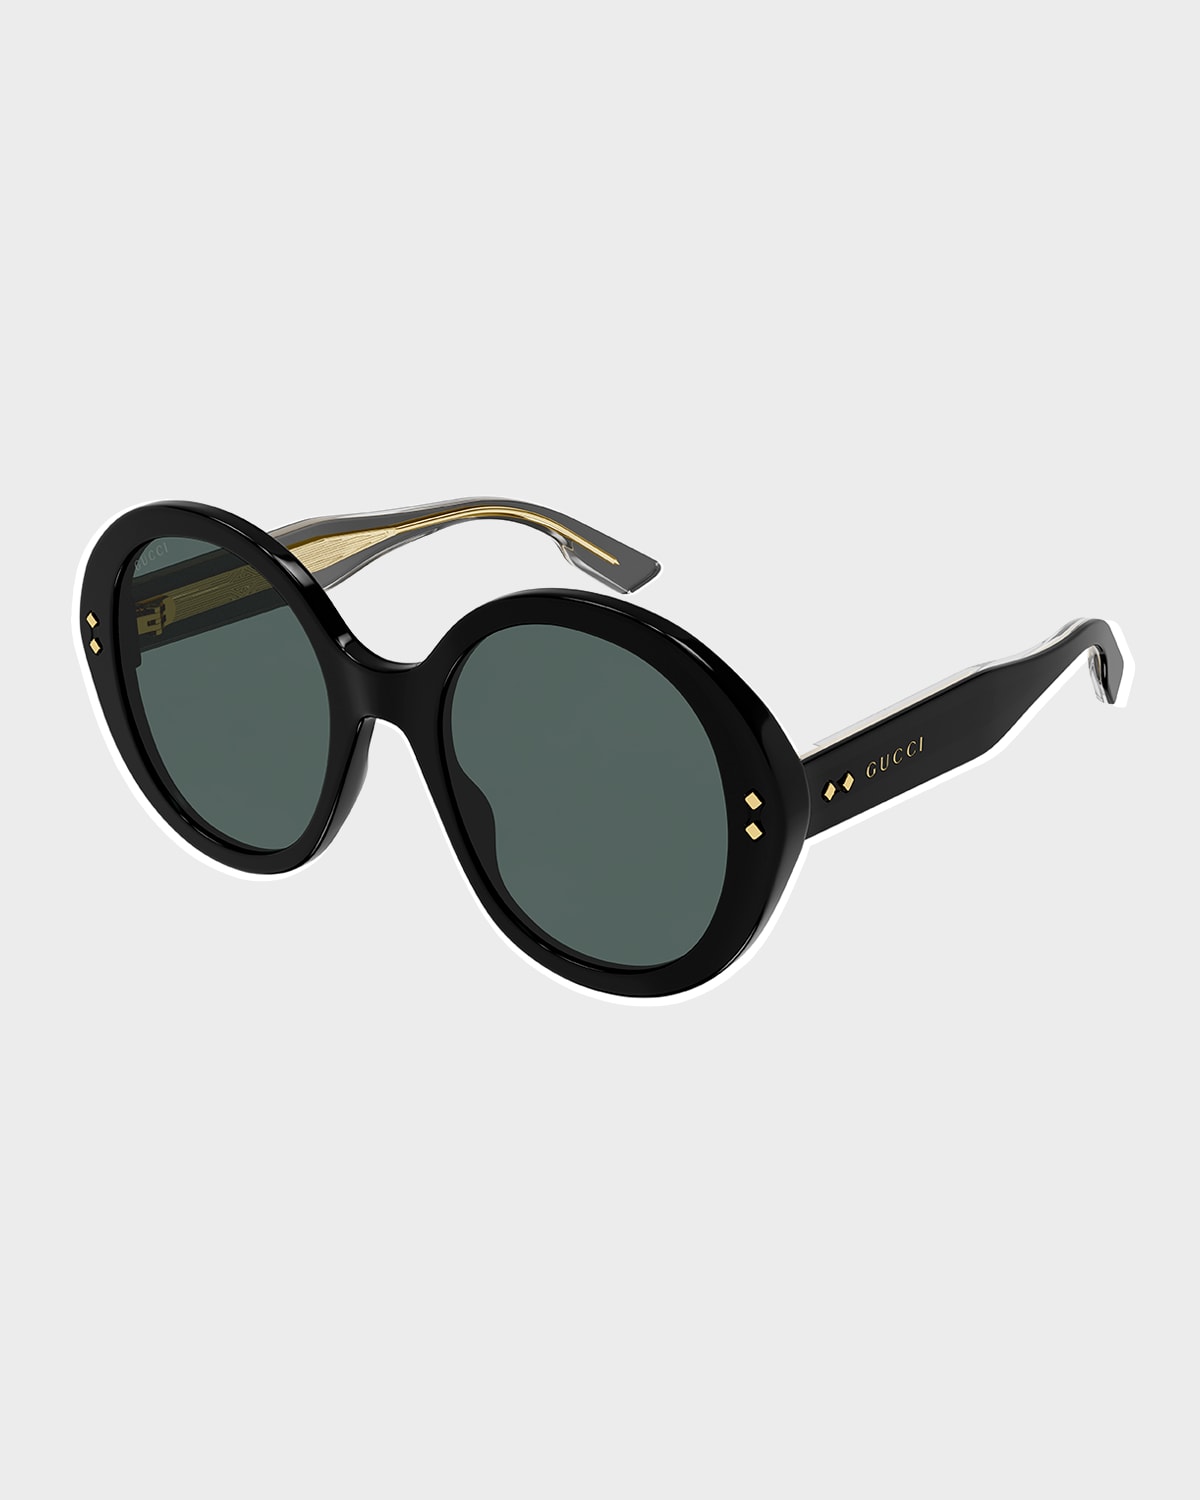 Gucci Round Acetate Sunglasses In 001 Shiny Black